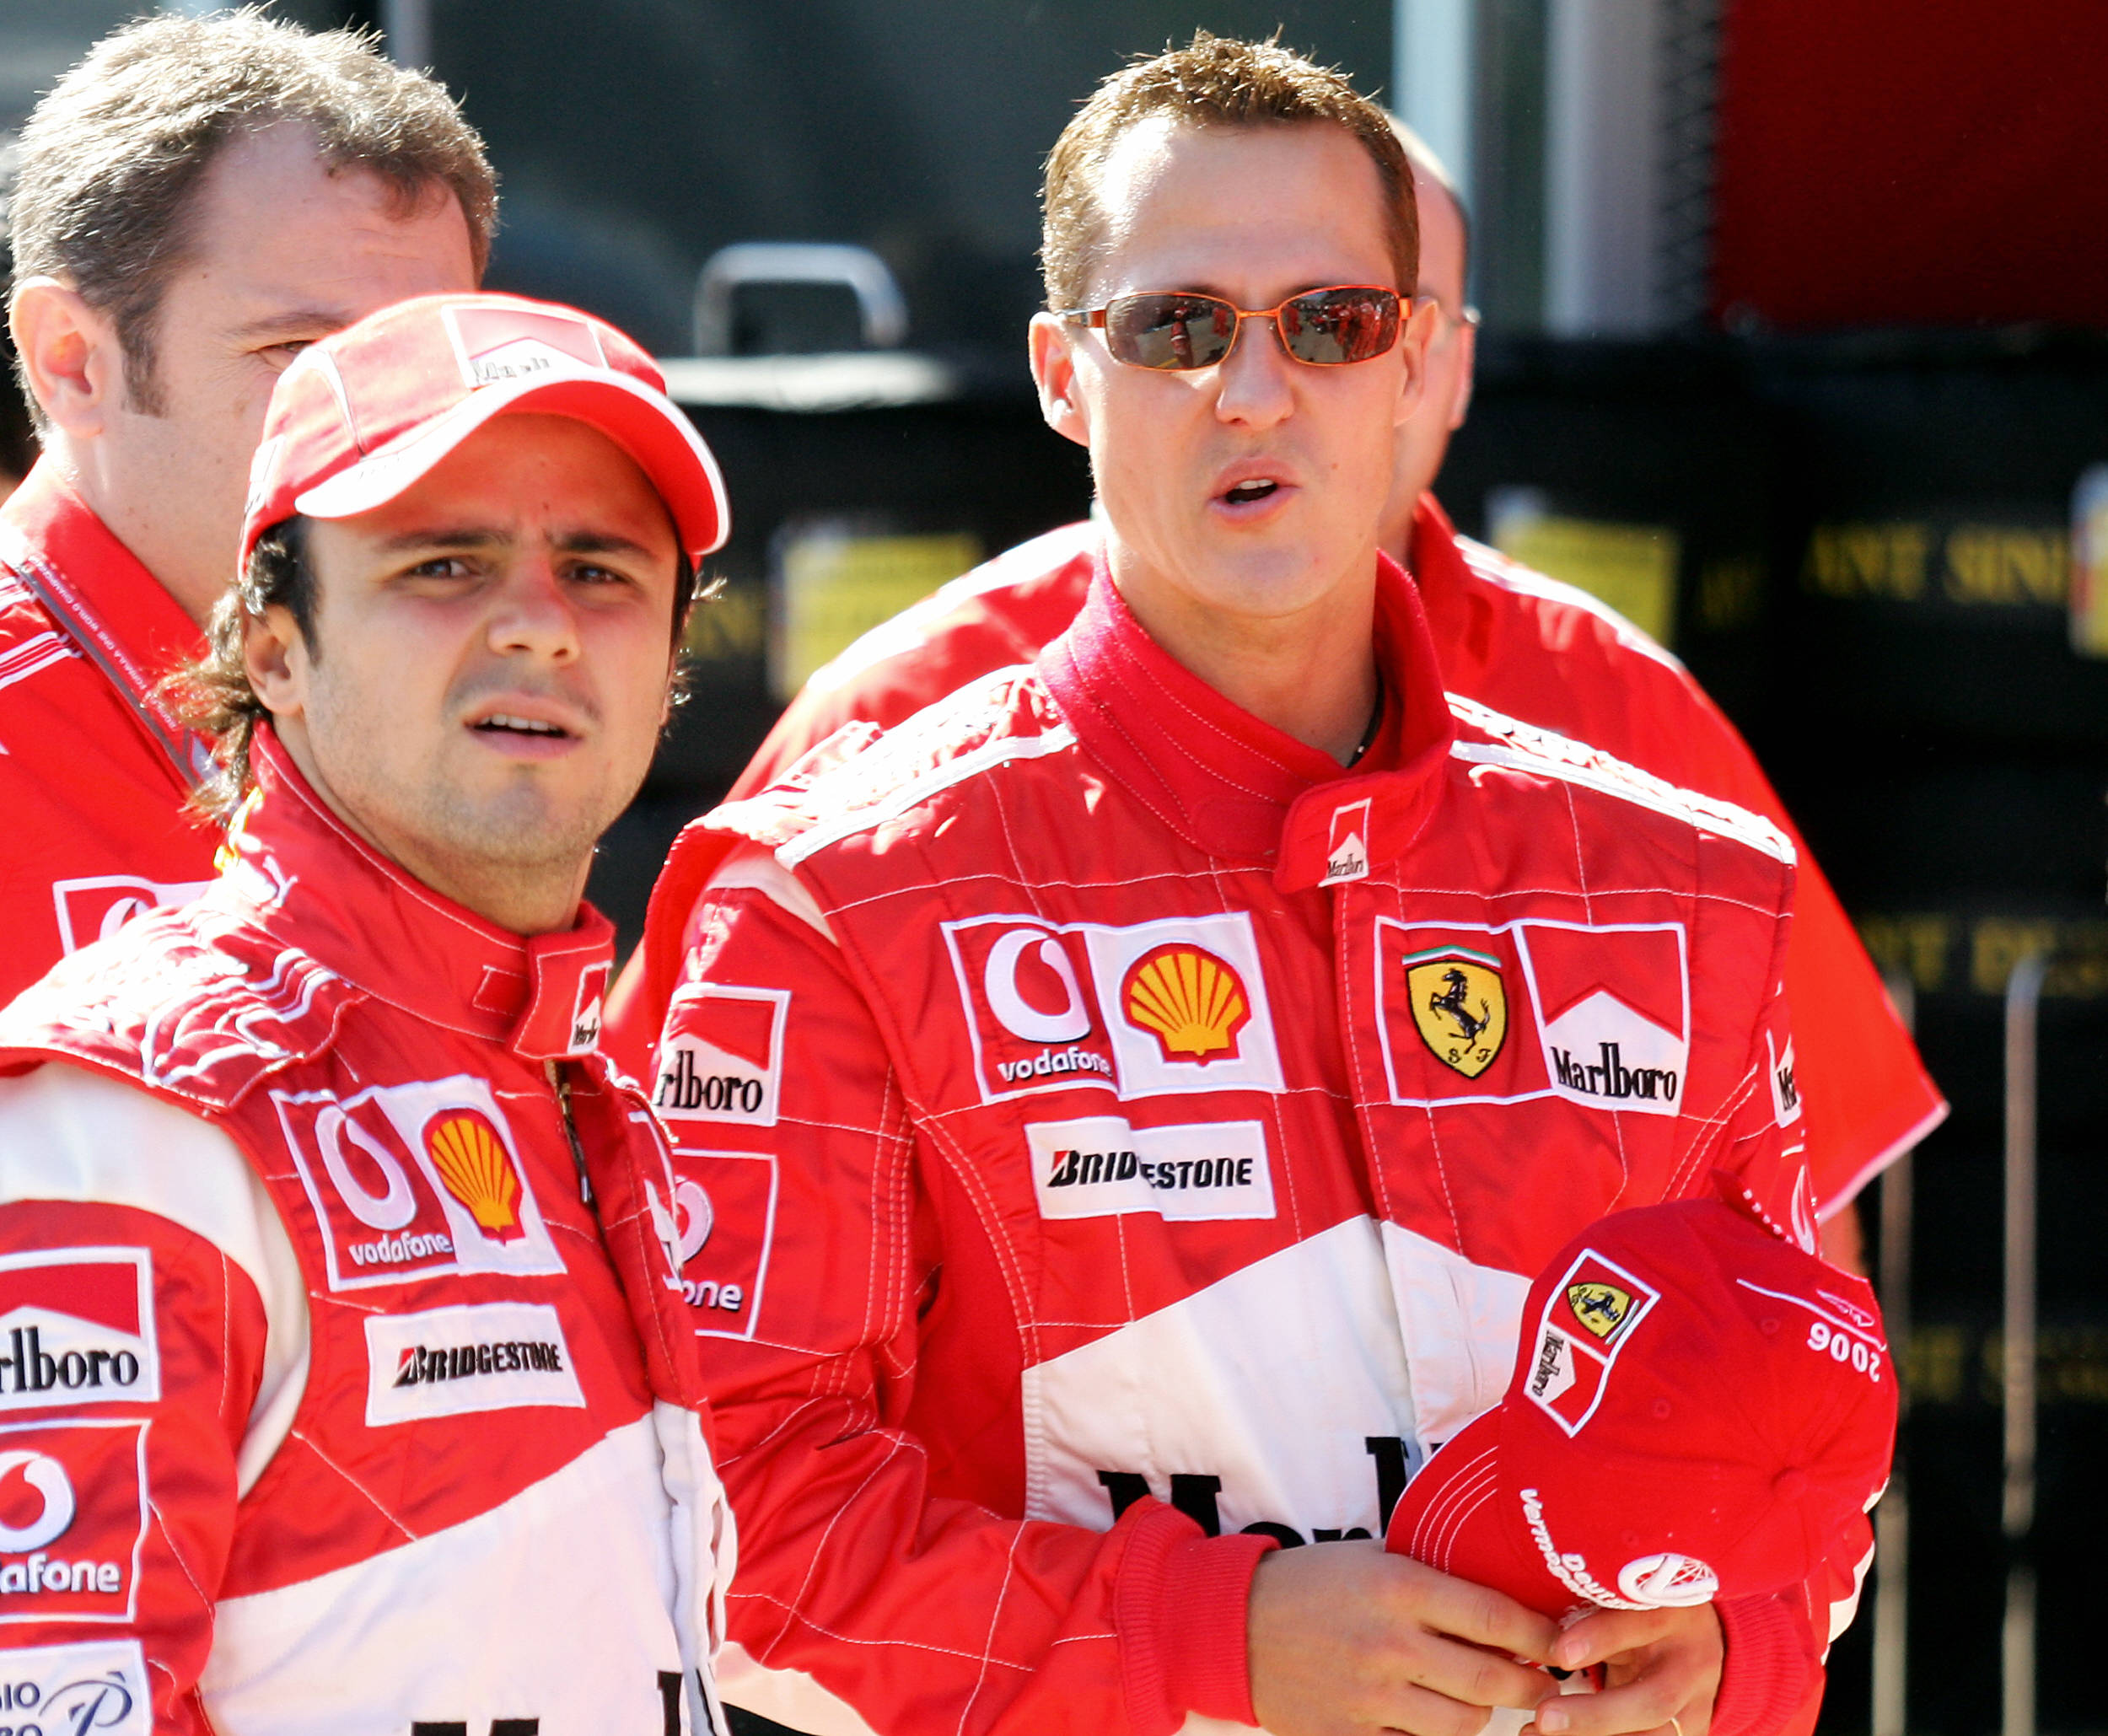 Massa meglátogatta Schumachert, nagyon megviselte barátja látványa - Blikk